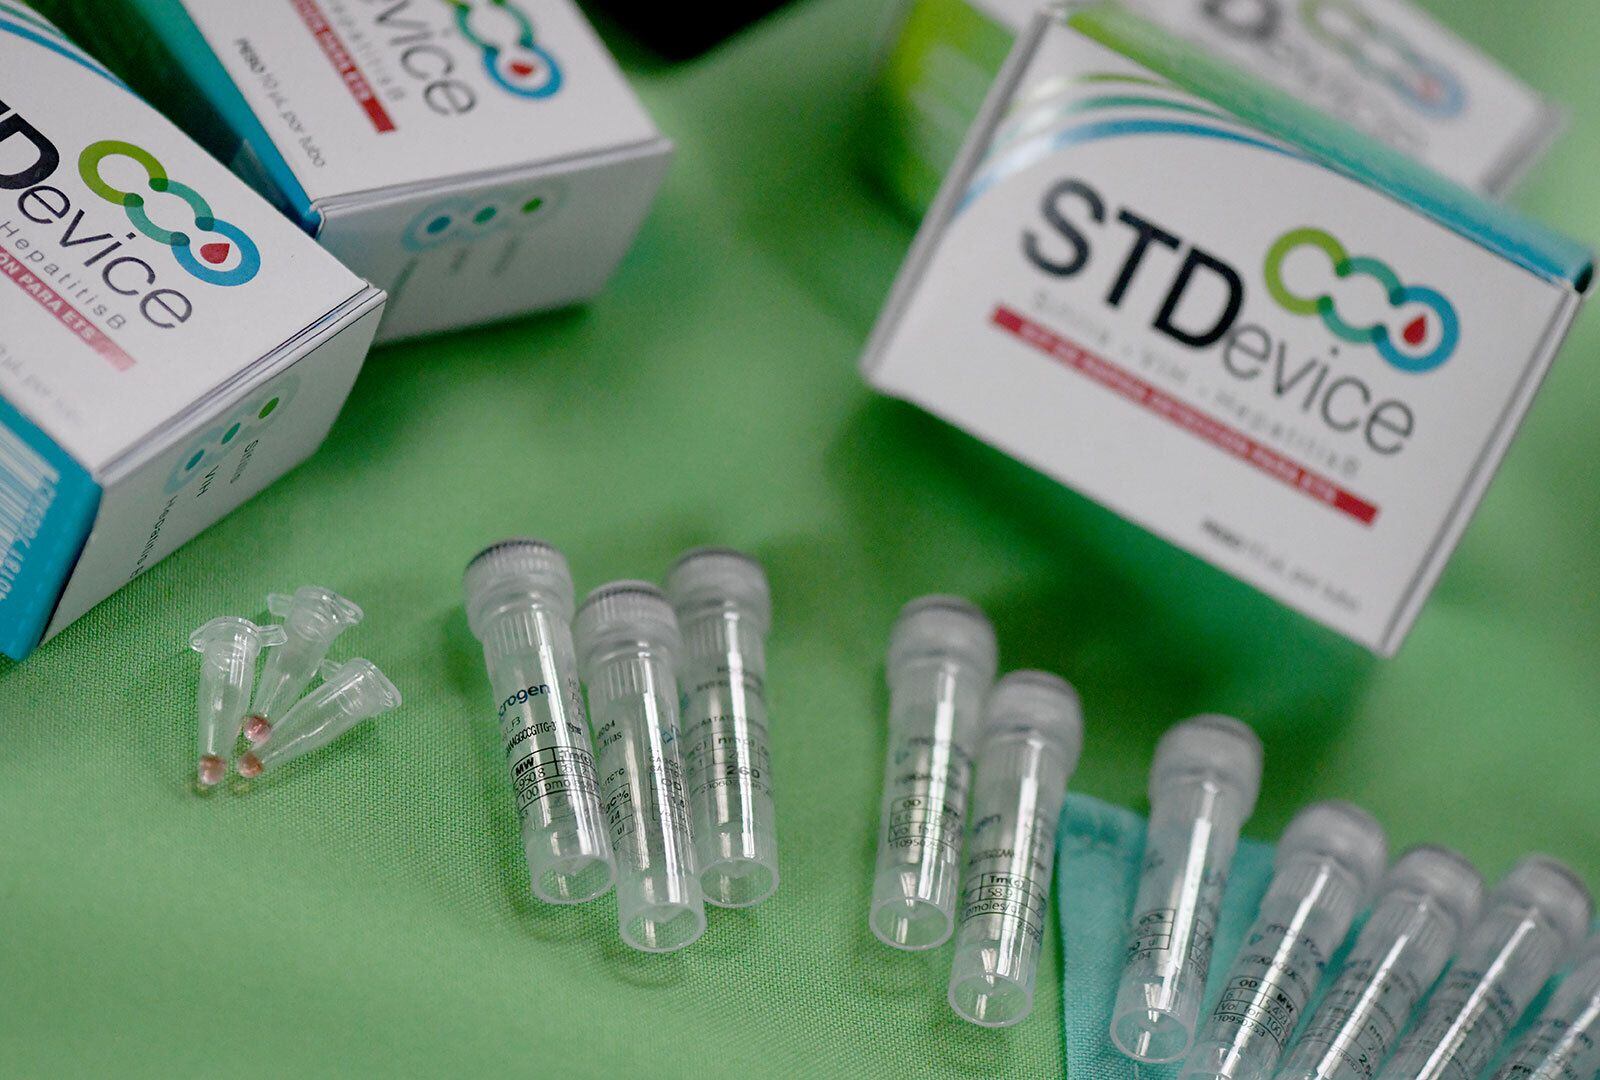 Estas son las pruebas que buscan detectar de forma rápida si una persona tiene una infección de transmisión sexual (STD). Fotografía: Anel Kenjekeeva